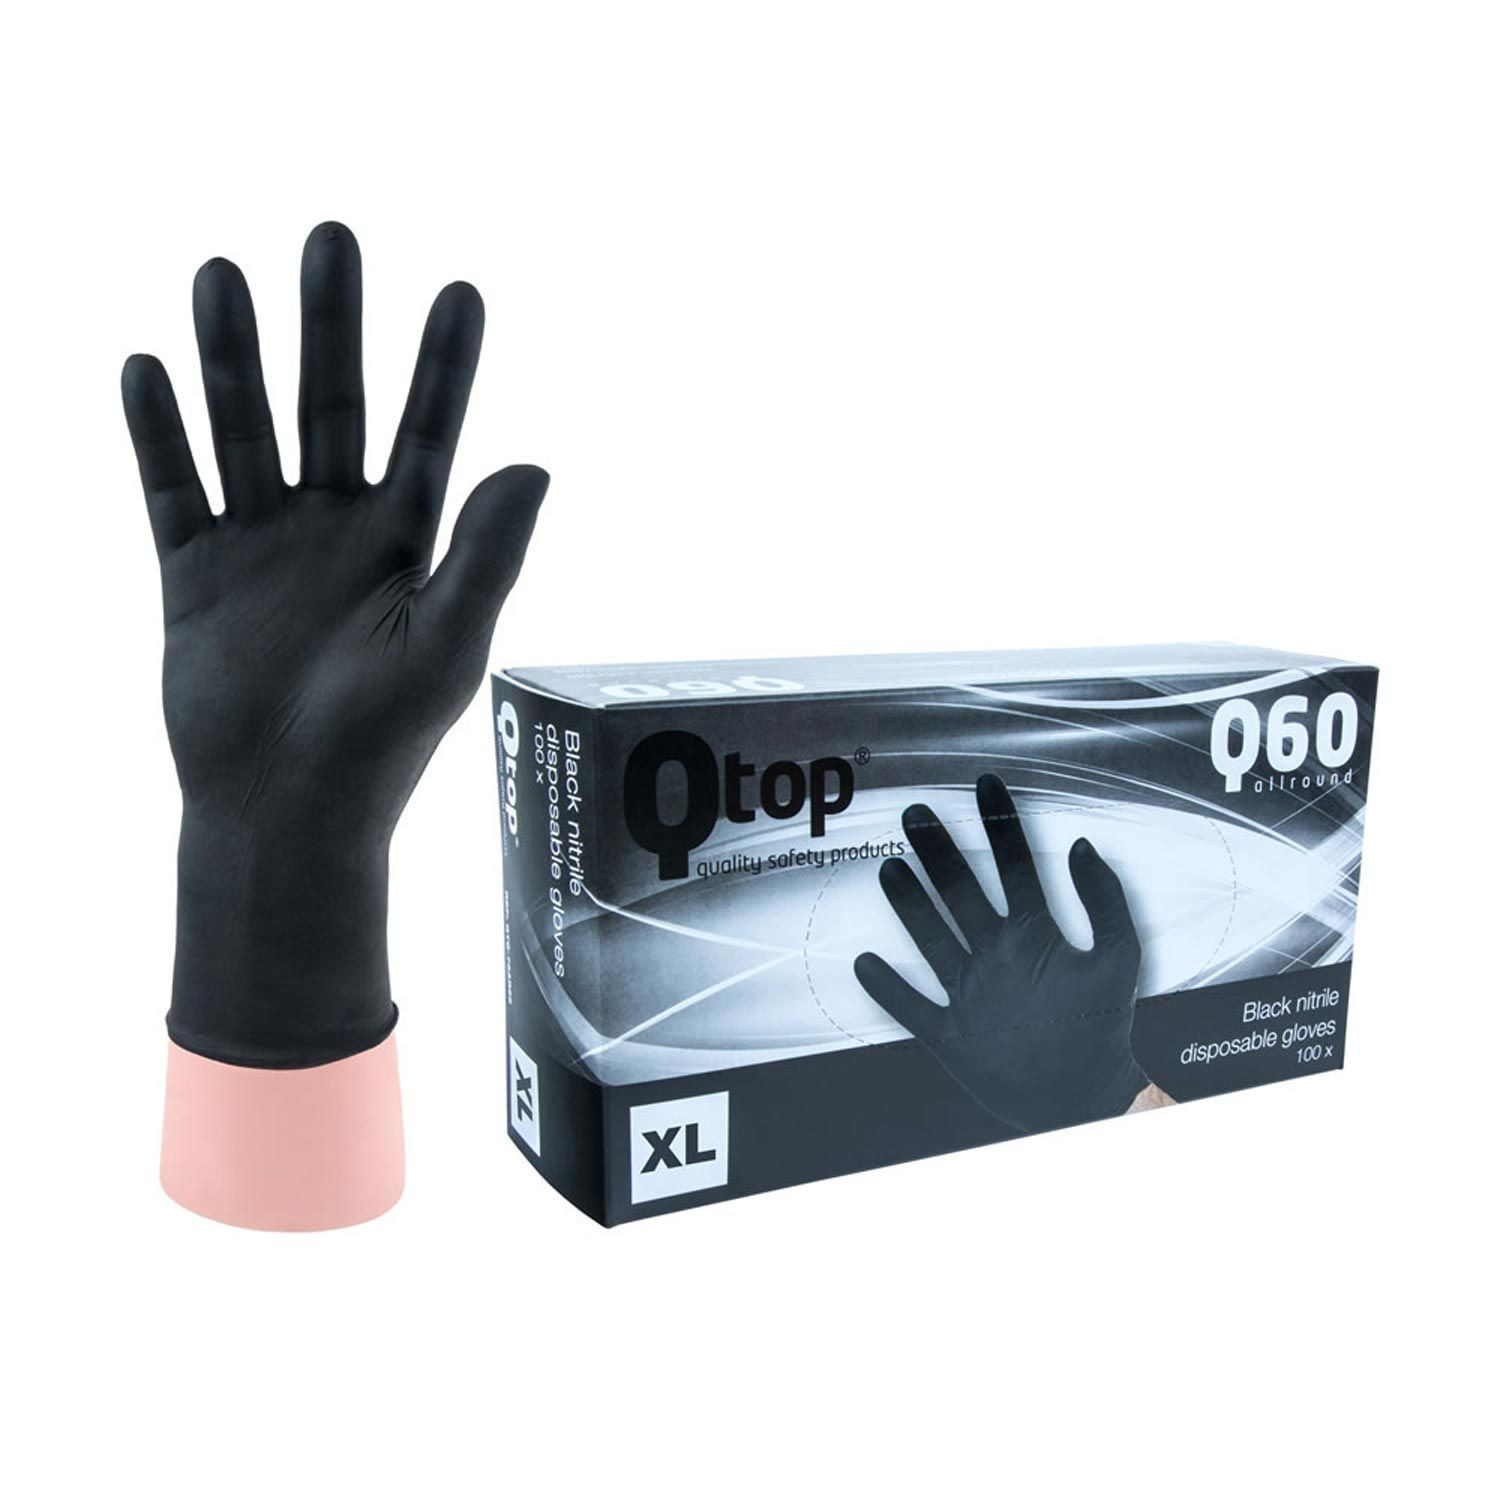 examination gloves manufacturer